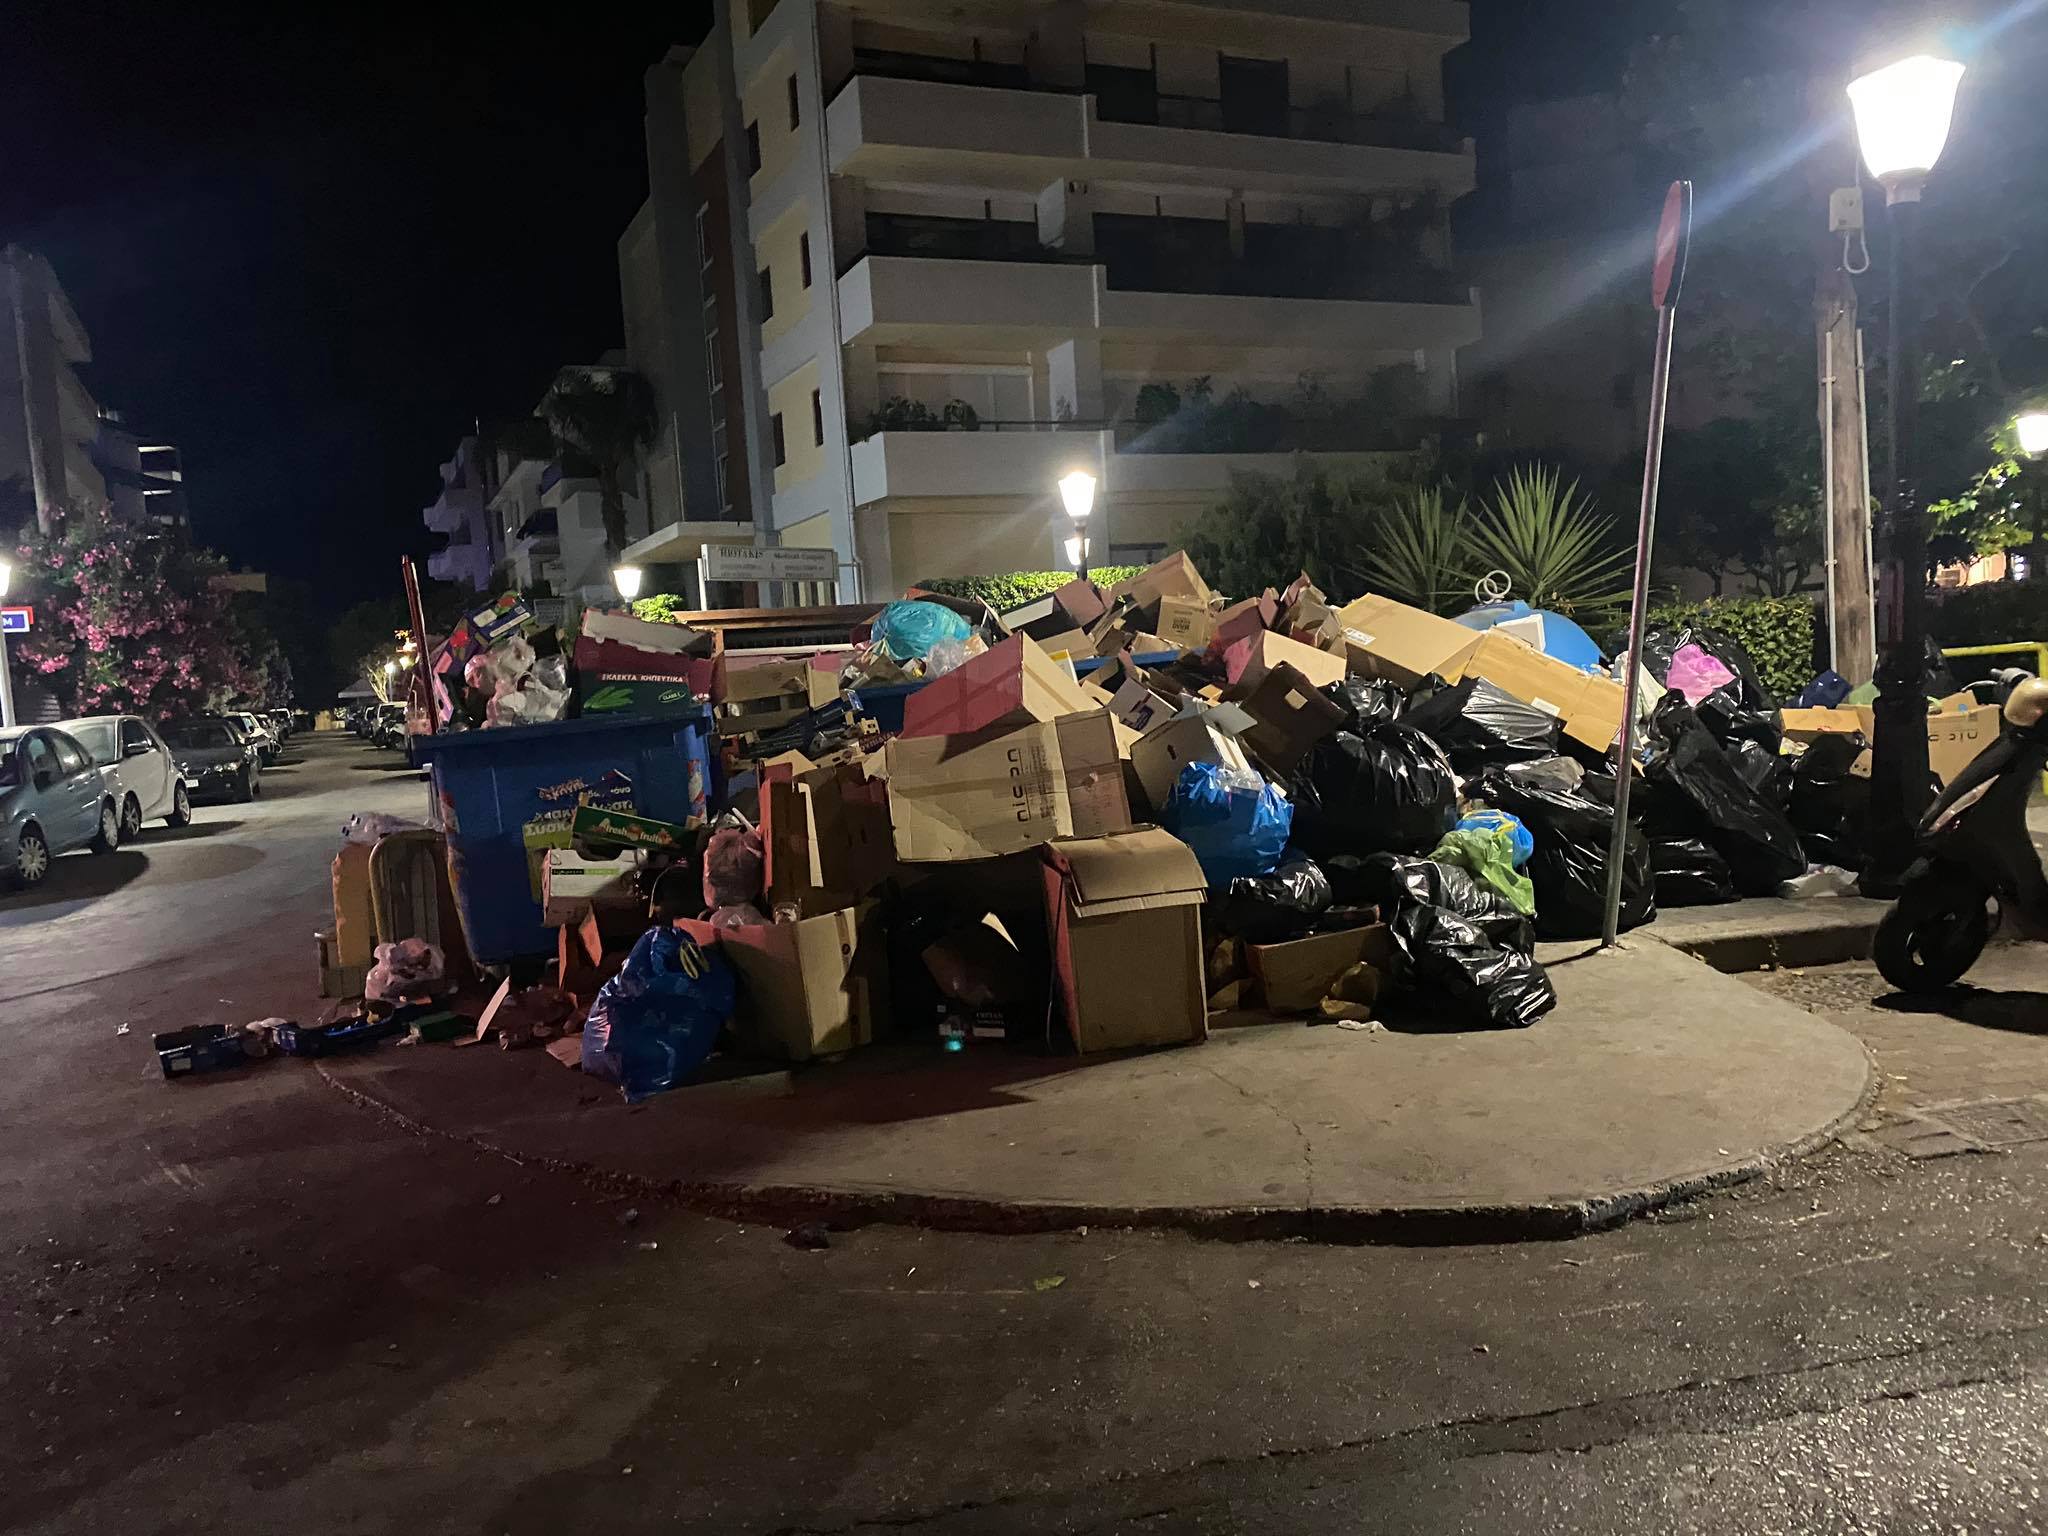 Ρόδος Δύναμη Πολιτών: Oι όγκοι των σκουπιδιών και η ΛΑΜΨΗ του Δημαρχείου! Skoupidia-rodos